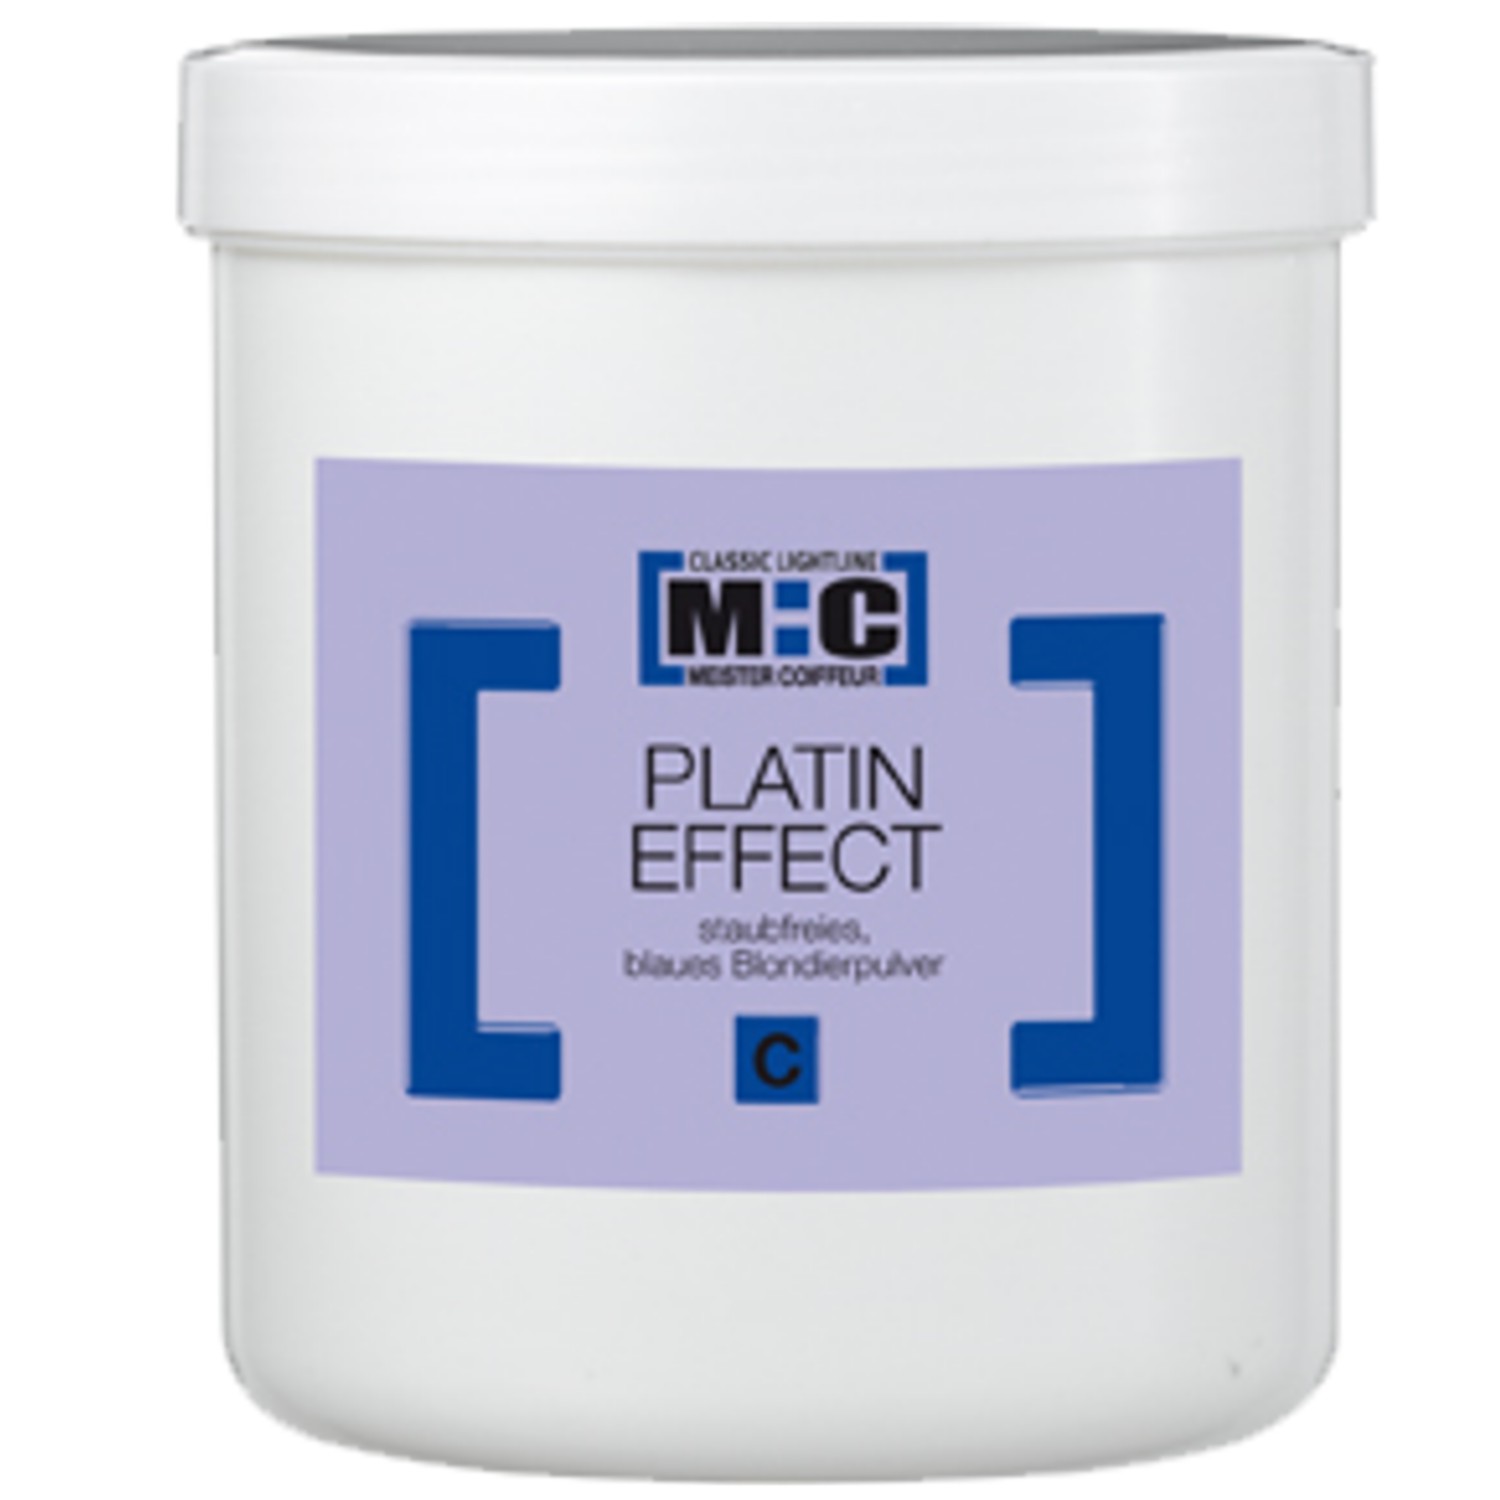 Meister Coiffeur M:C Platin Effect C Blondierpulver blau 100 g